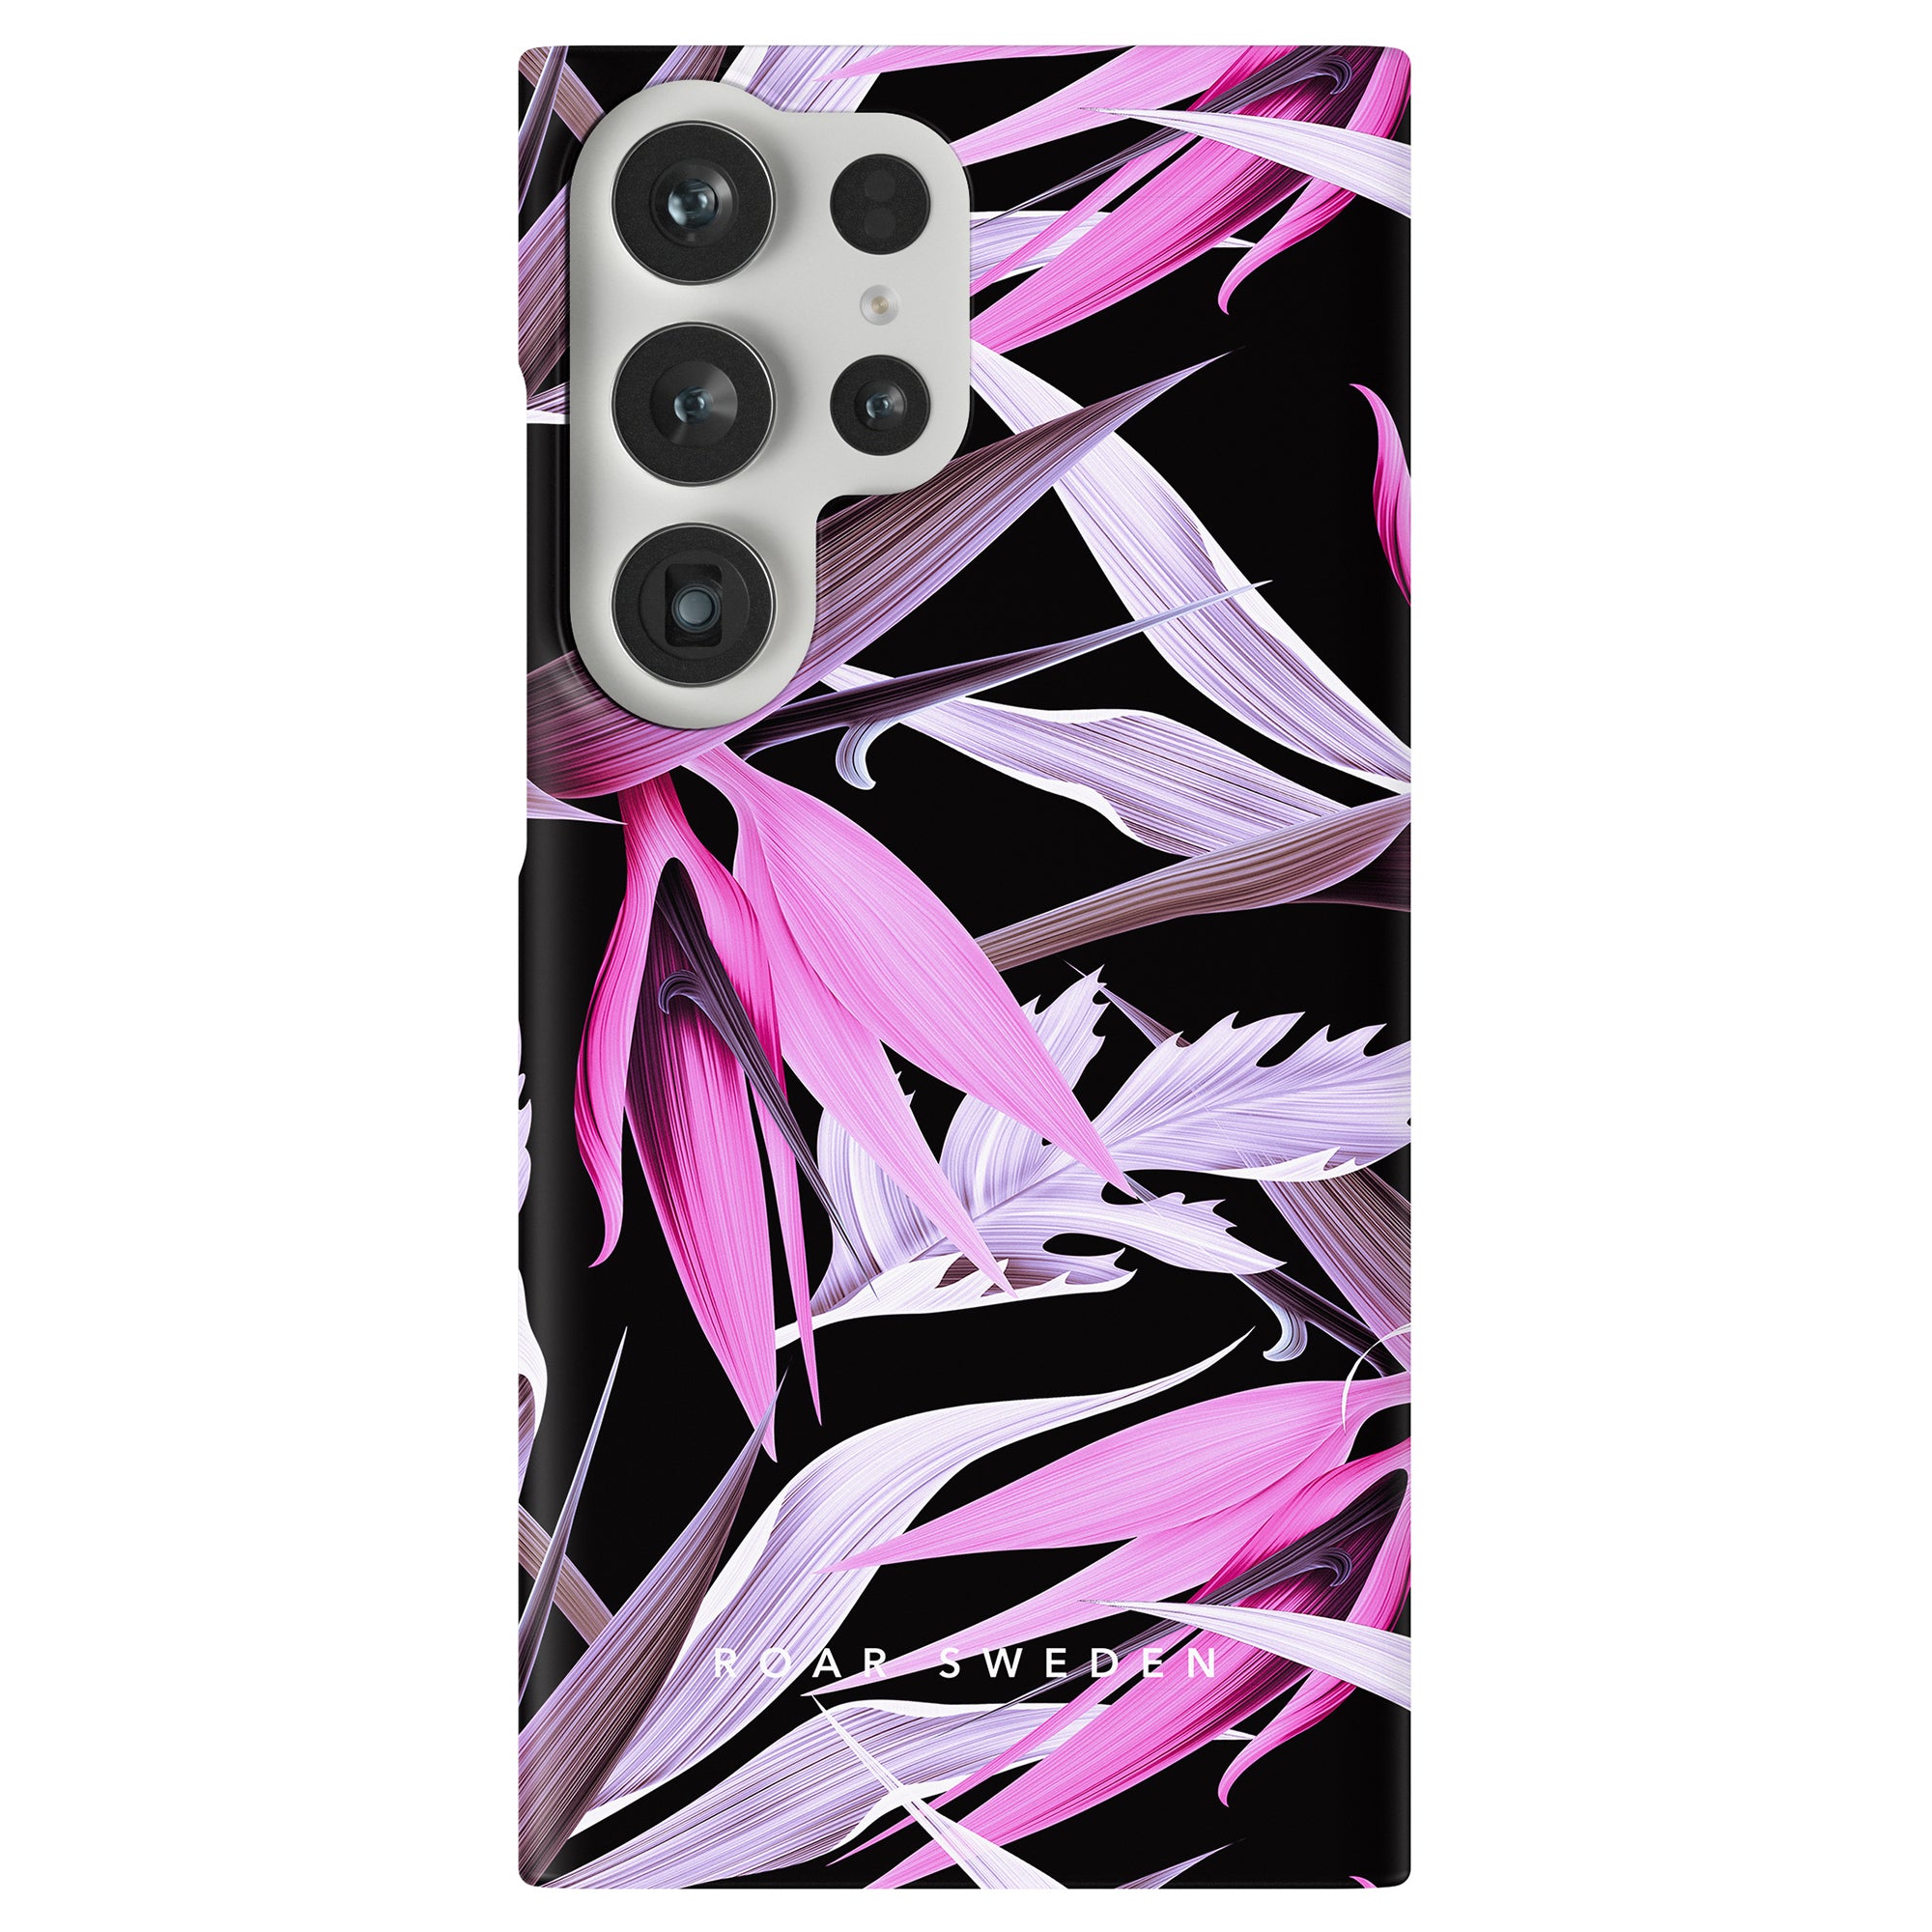 Detta Tropical Night - Slim fodral har en tropisk skönhet design med livfulla rosa och svarta blommor, vilket skapar en magisk oas för din telefon.